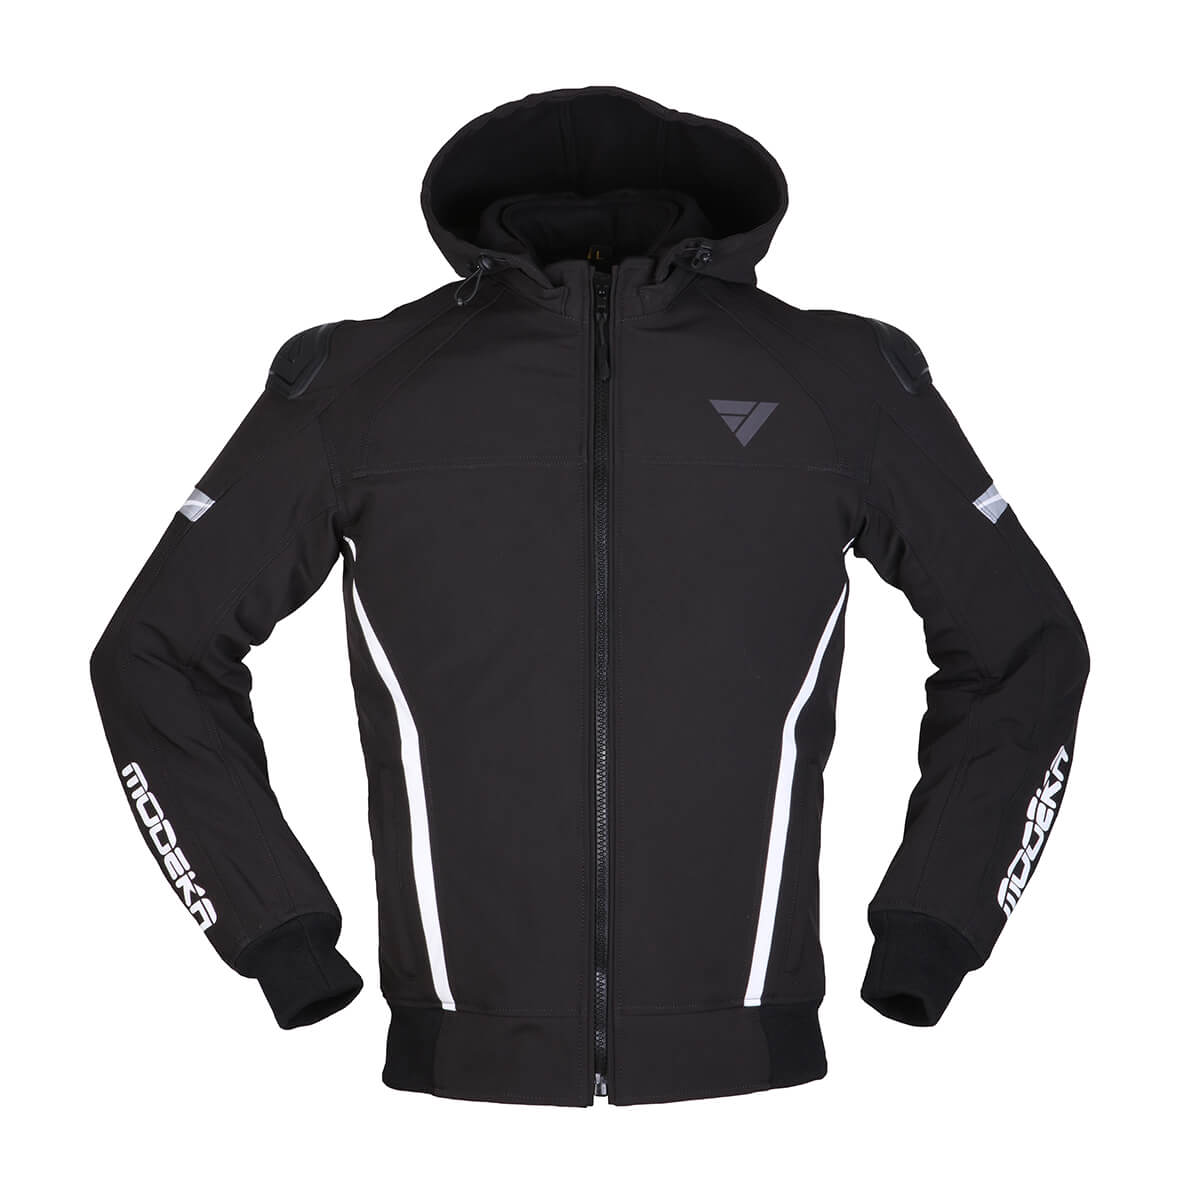 Image of Modeka Clarke Sport Jacket Black White Size XL ID 4045765189504